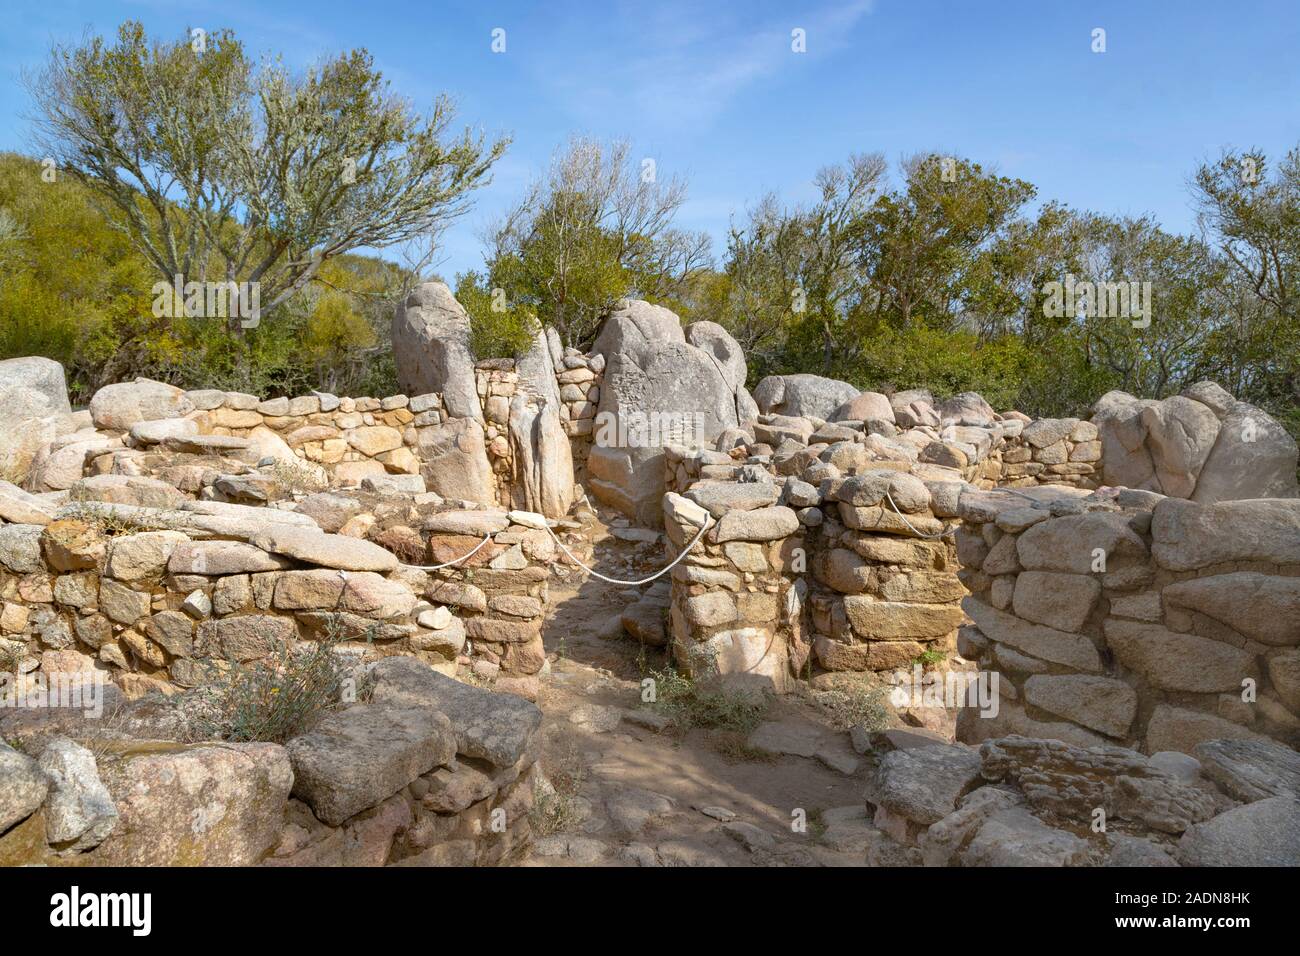 Sitio arqueológico de Lu Brandali nuraghe, los restos de una ronda de piedra seca torre megalítica, Santa Teresa di Gallura, Capo Testa, Cerdeña, Italia. Foto de stock